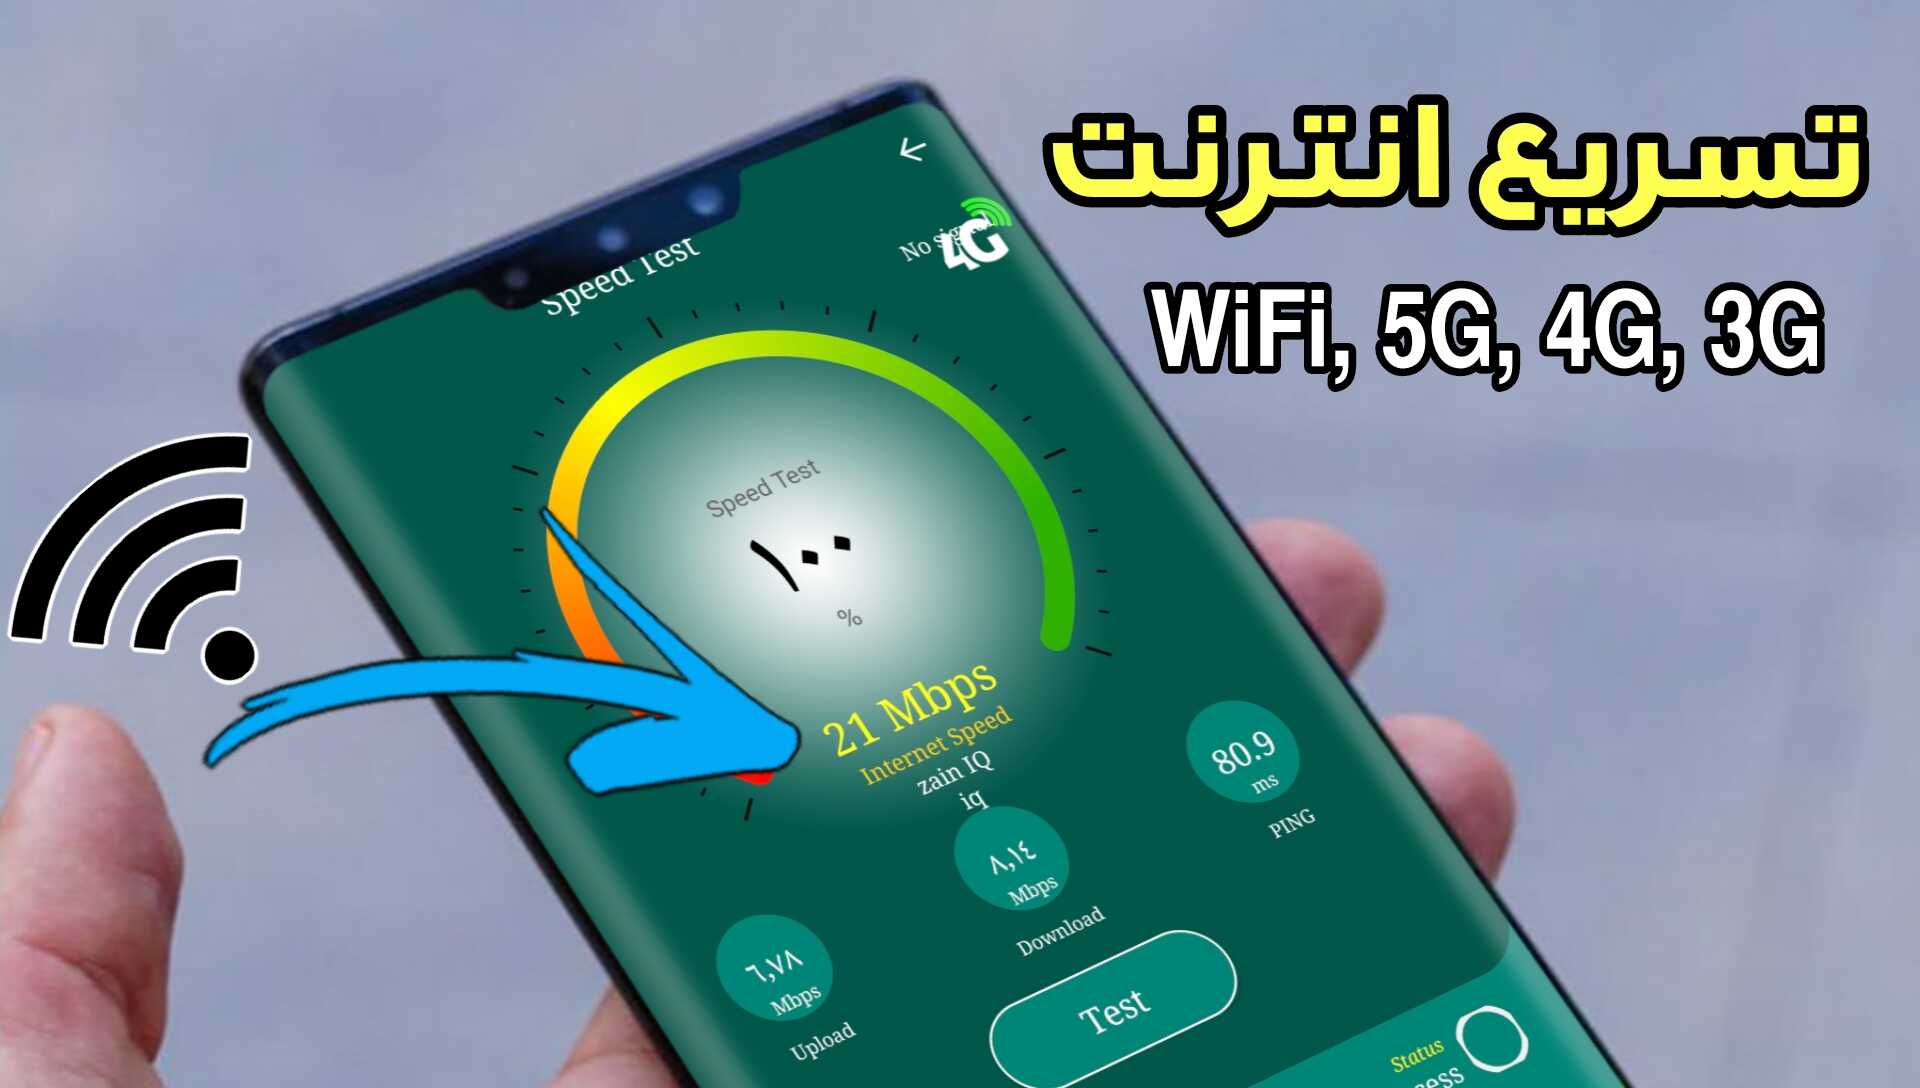 تسريع انترنت WiFi 5G 4G 3G وجعلة أسرع من السريع